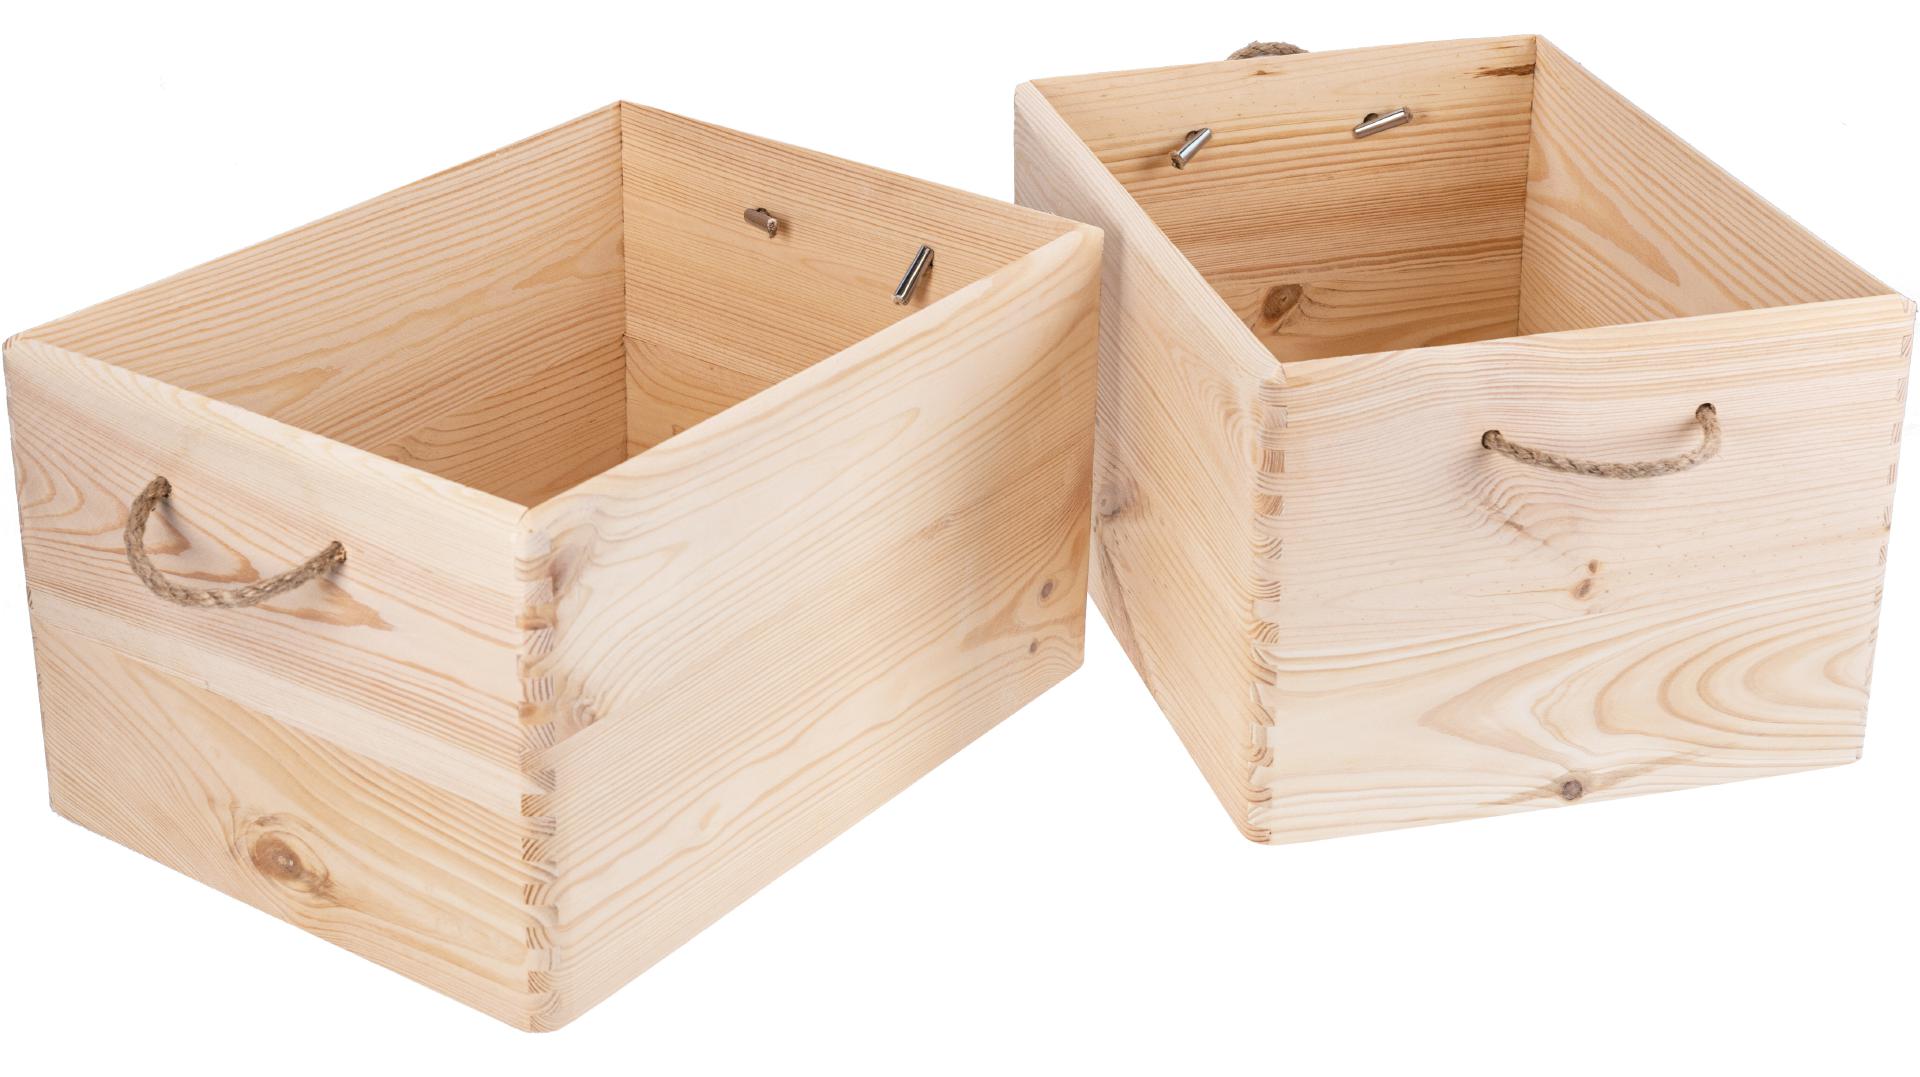 Stilvolle Holz Kiste mit Kordel Griffen